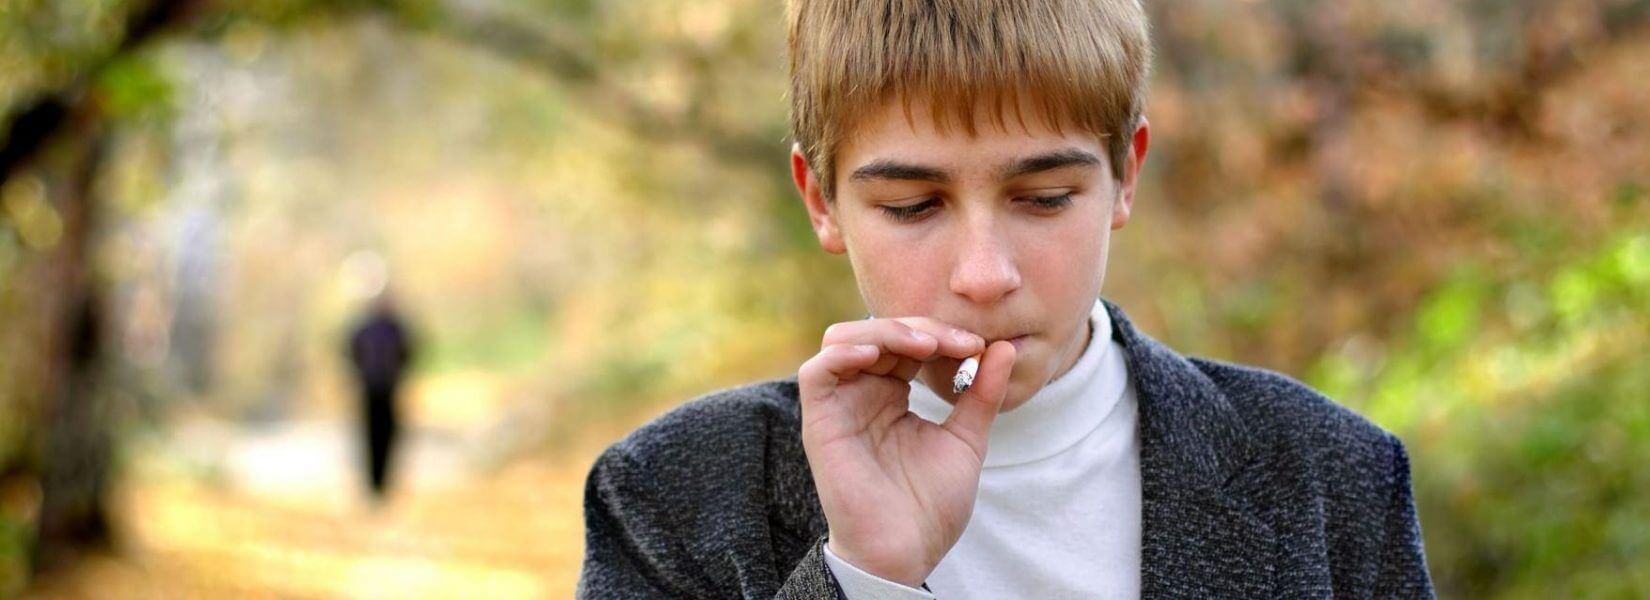 Ανησυχητικά τα ποσοστά κατανάλωσης αλκοόλ και τσιγάρων στα παιδιά 11 με 15 ετών